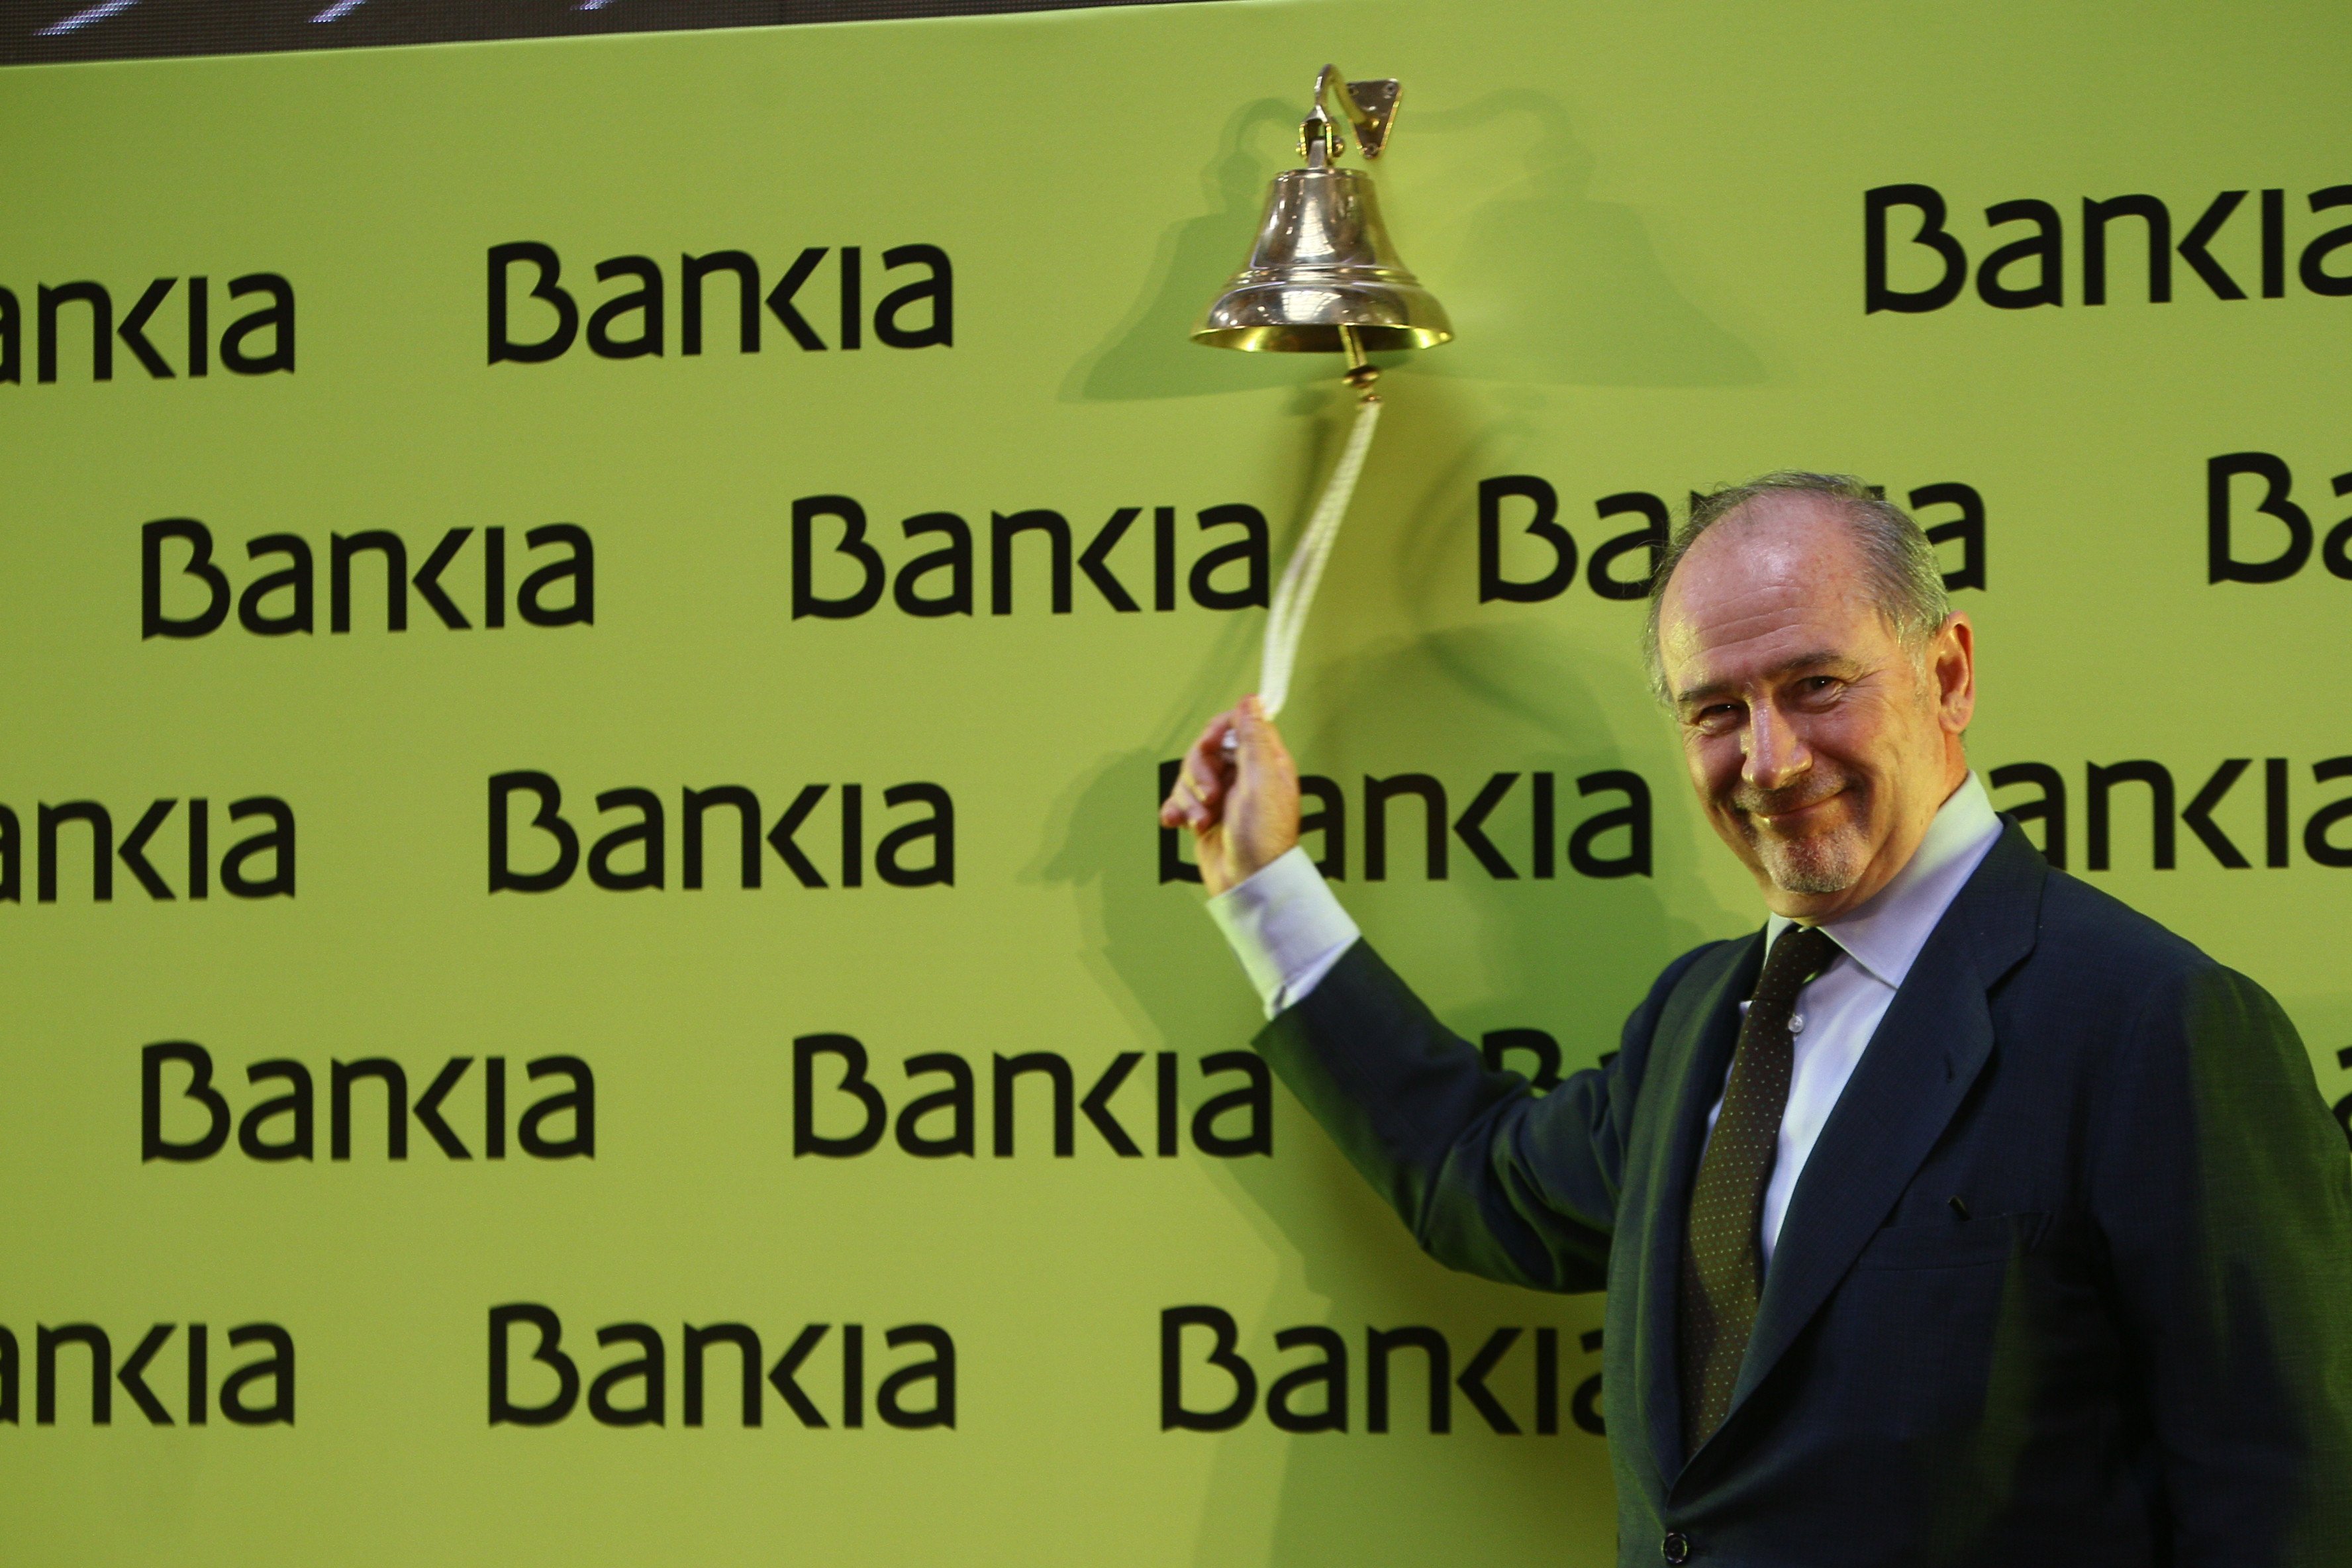 Absueltos Rato y el resto de acusados por la salida a bolsa de Bankia